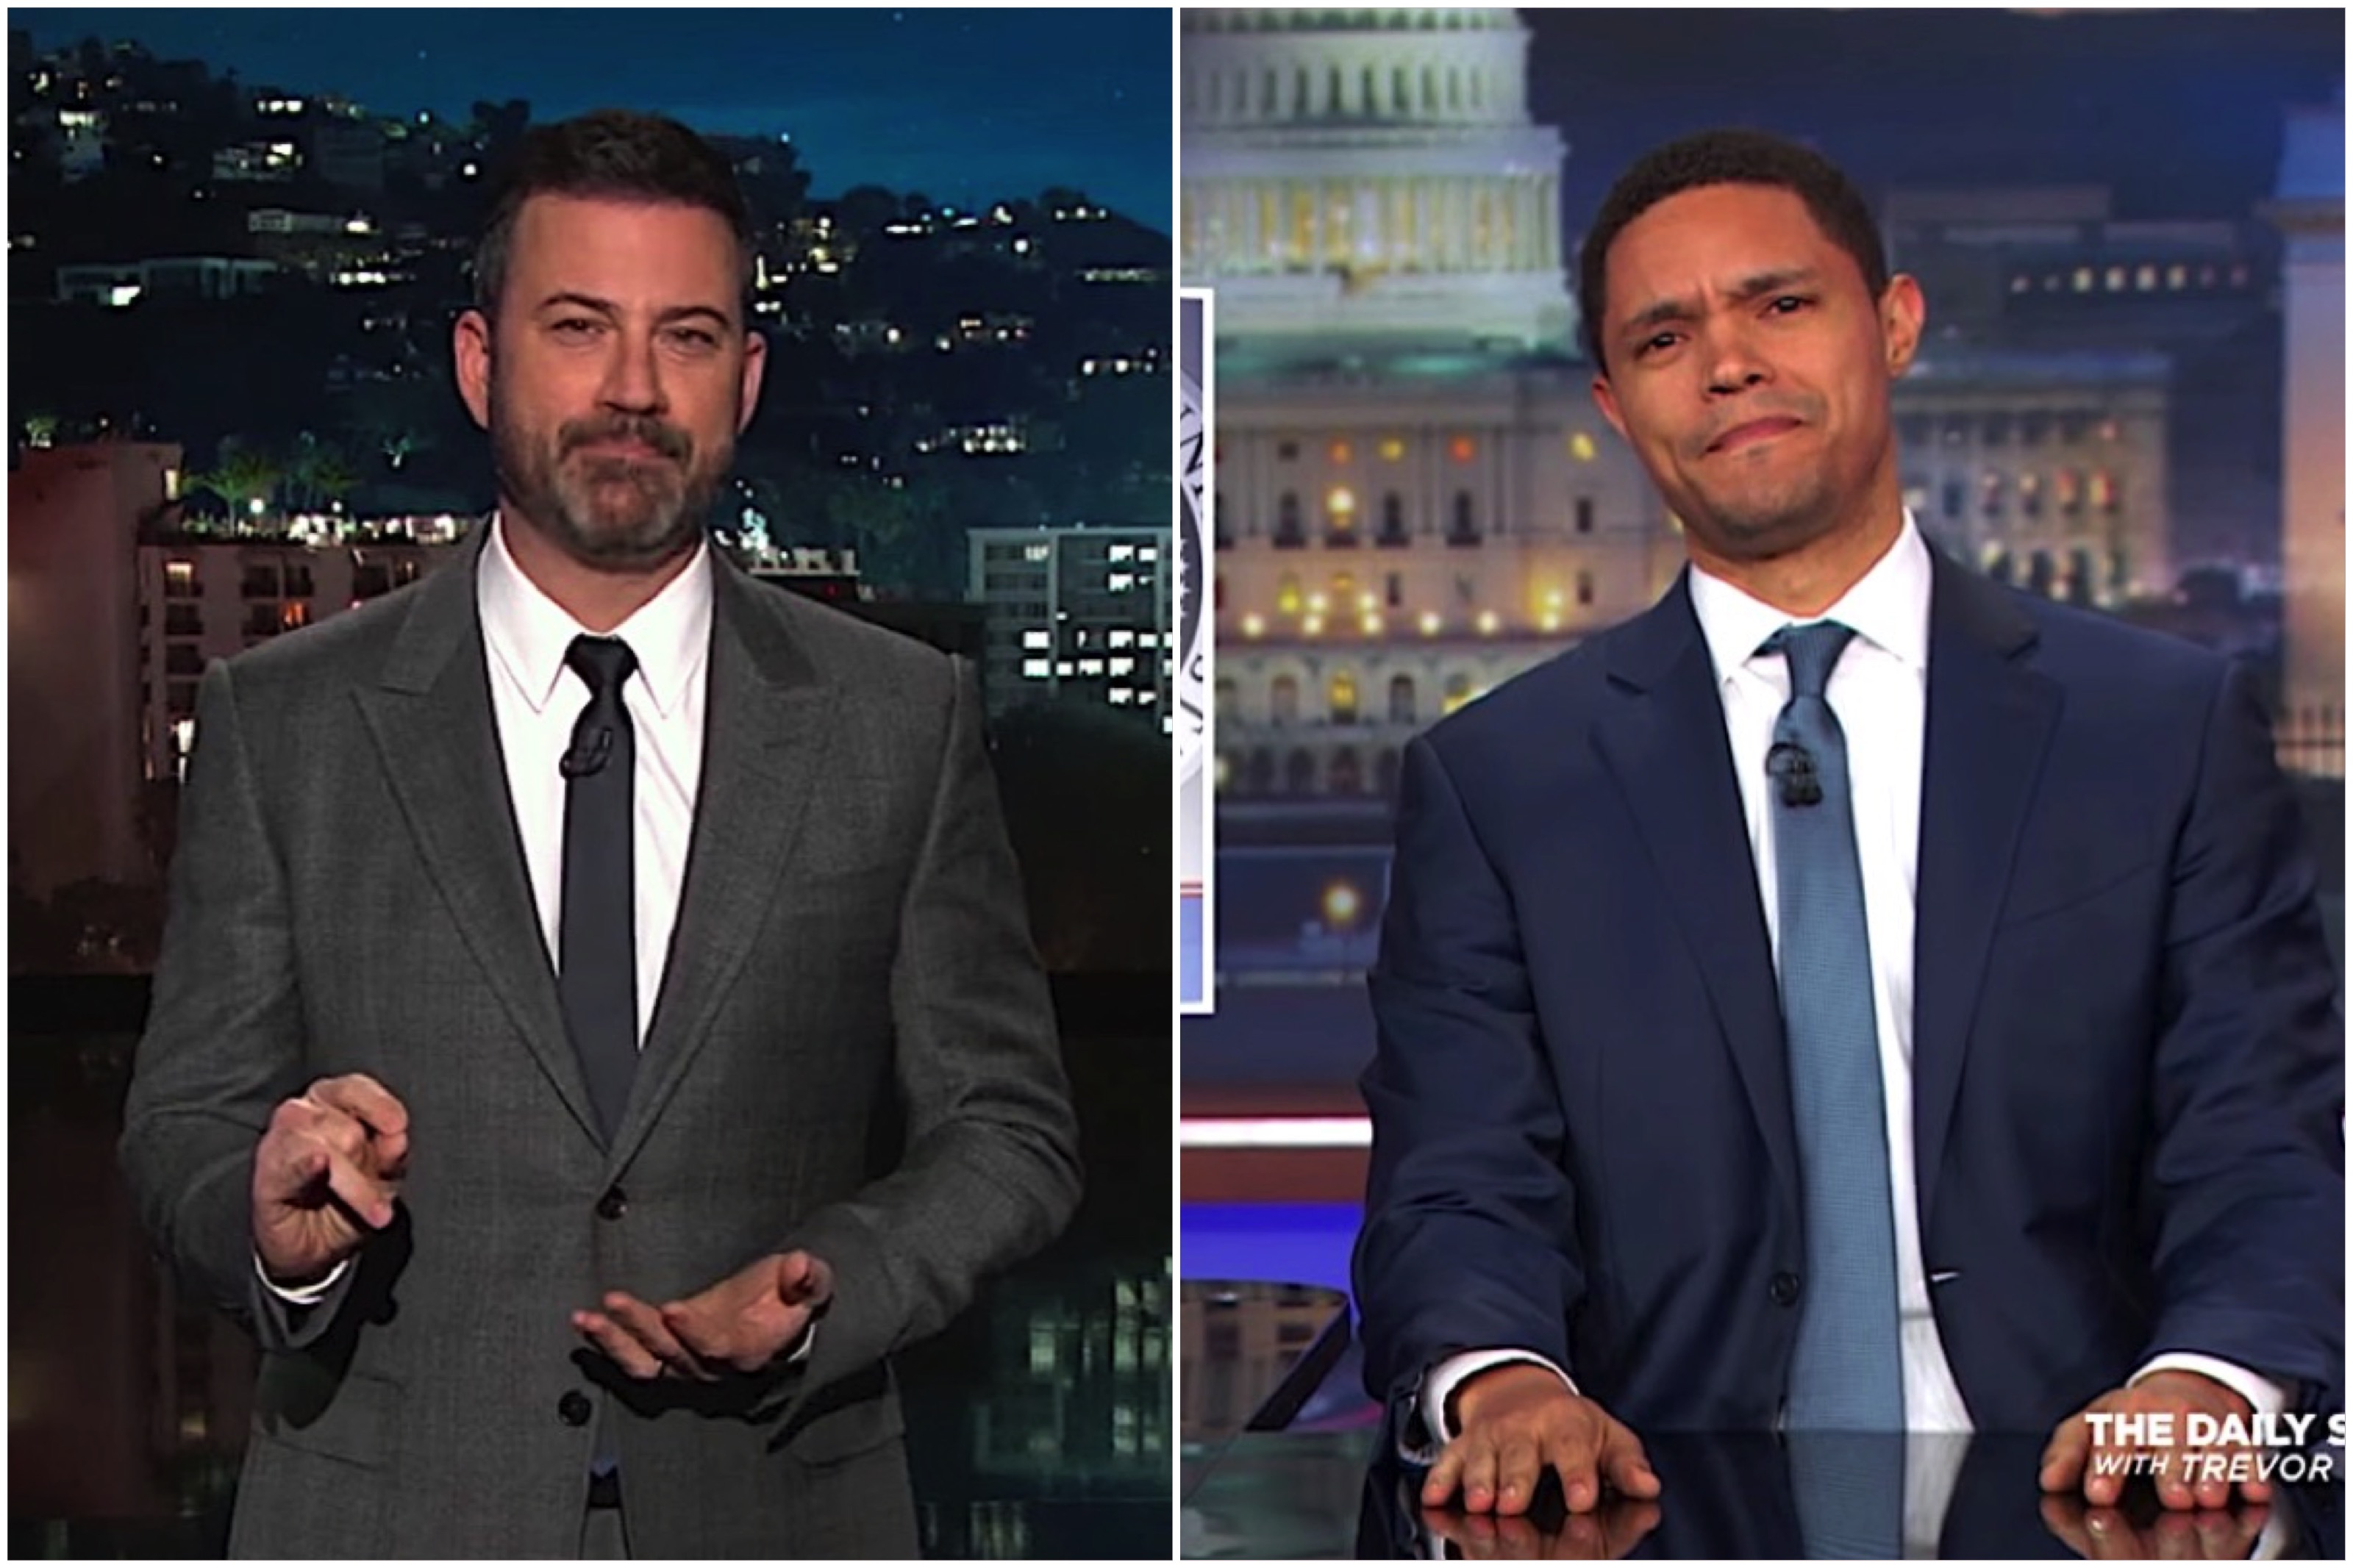 Trevor Noah and Jimmy Kimmel slam Trump on &quot;shithole&quot; comment